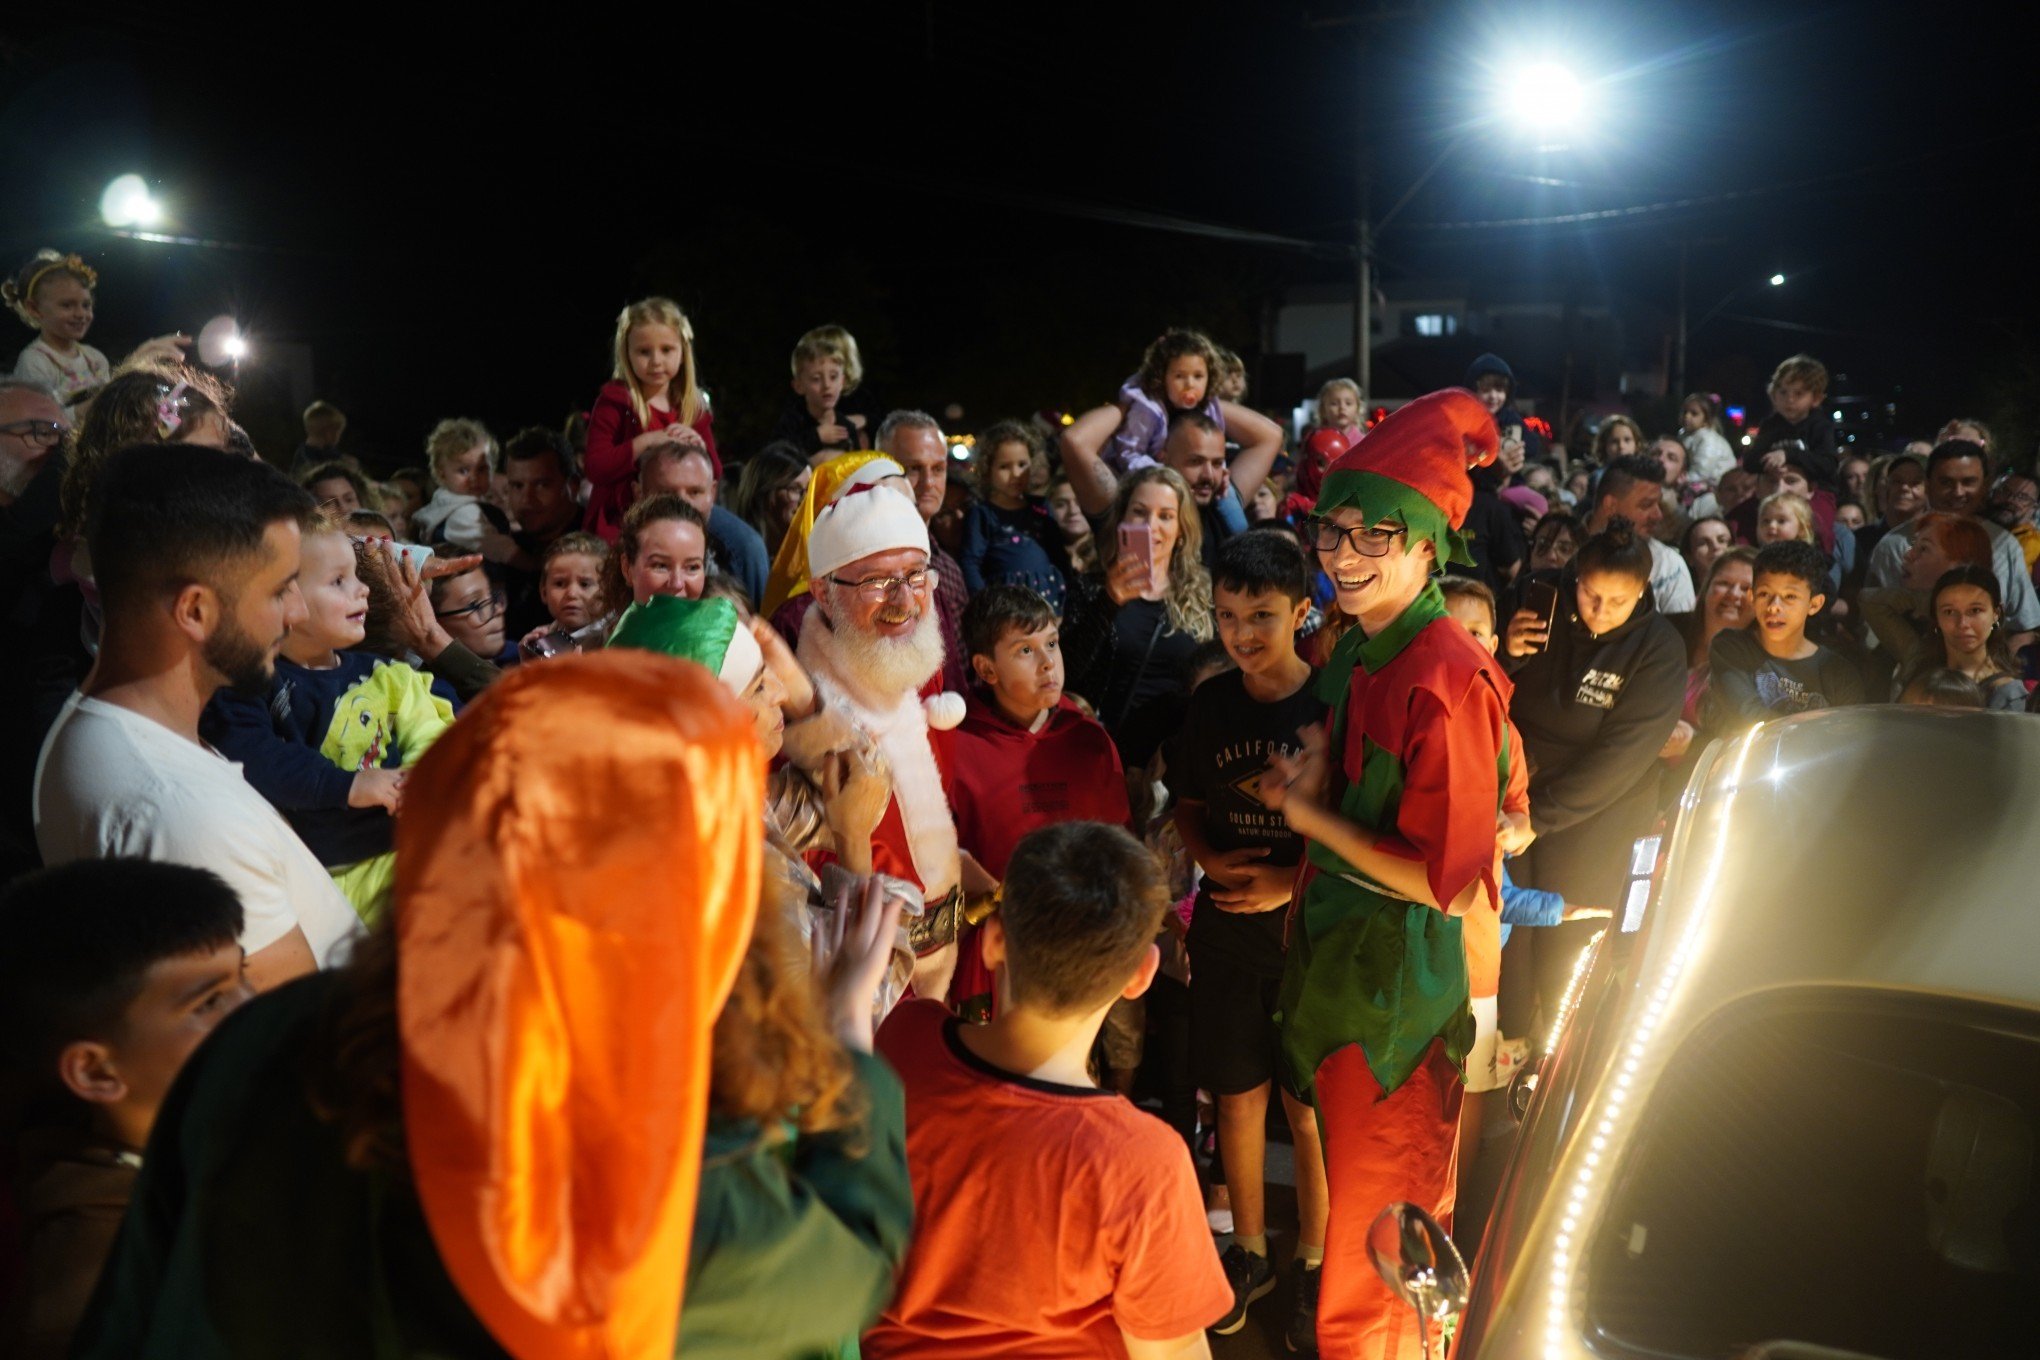 FOTOS: Natal de Ivoti começou iluminado e com a chegada do Papai Noel, confira a programação completa